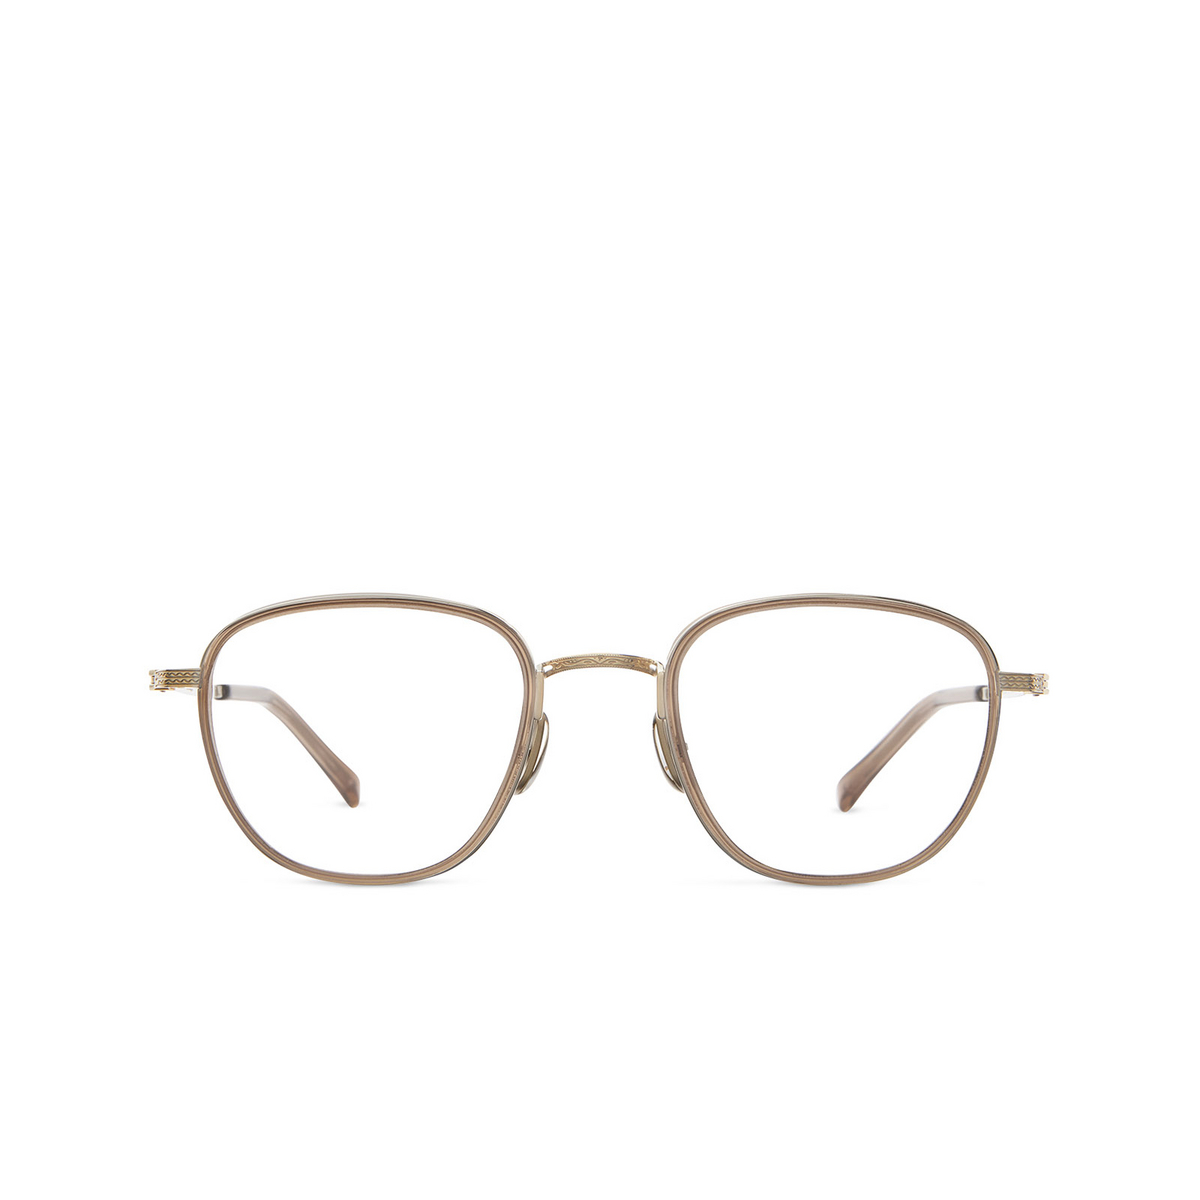 Mr. Leight GRIFFITH II C Eyeglasses TOP-12KG Topaz-12K White Gold - 1/3